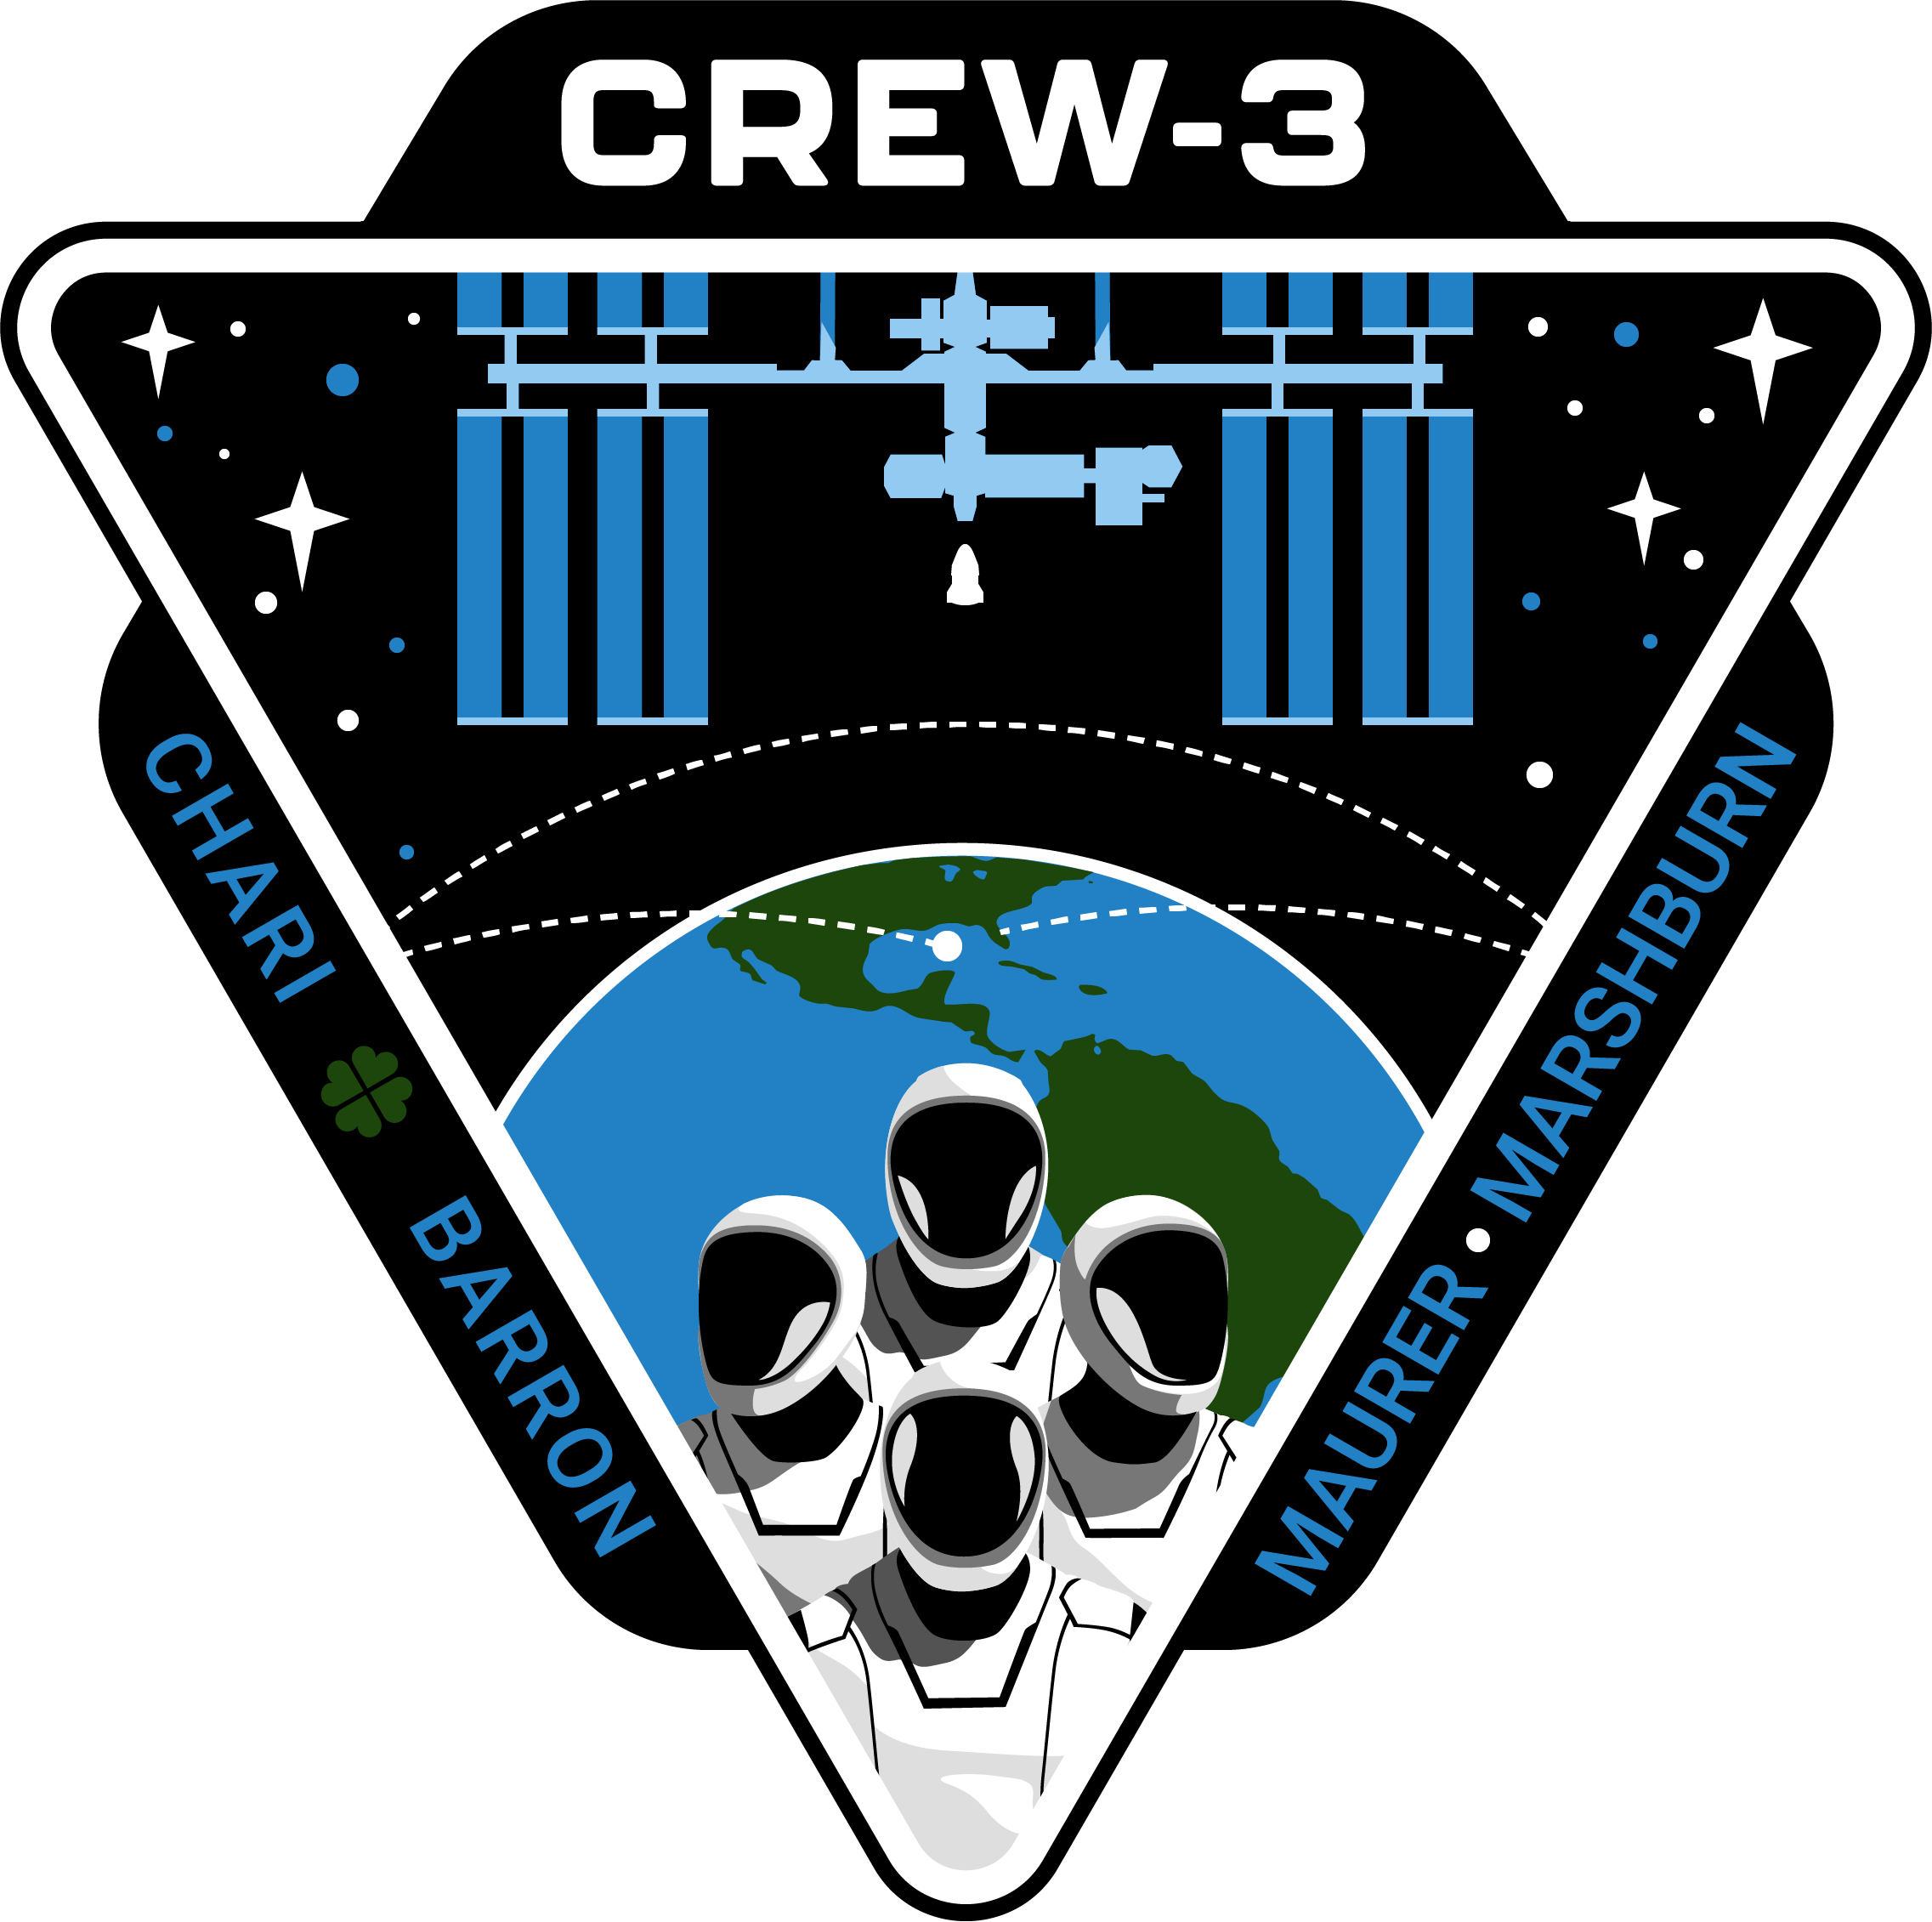 Crew-3